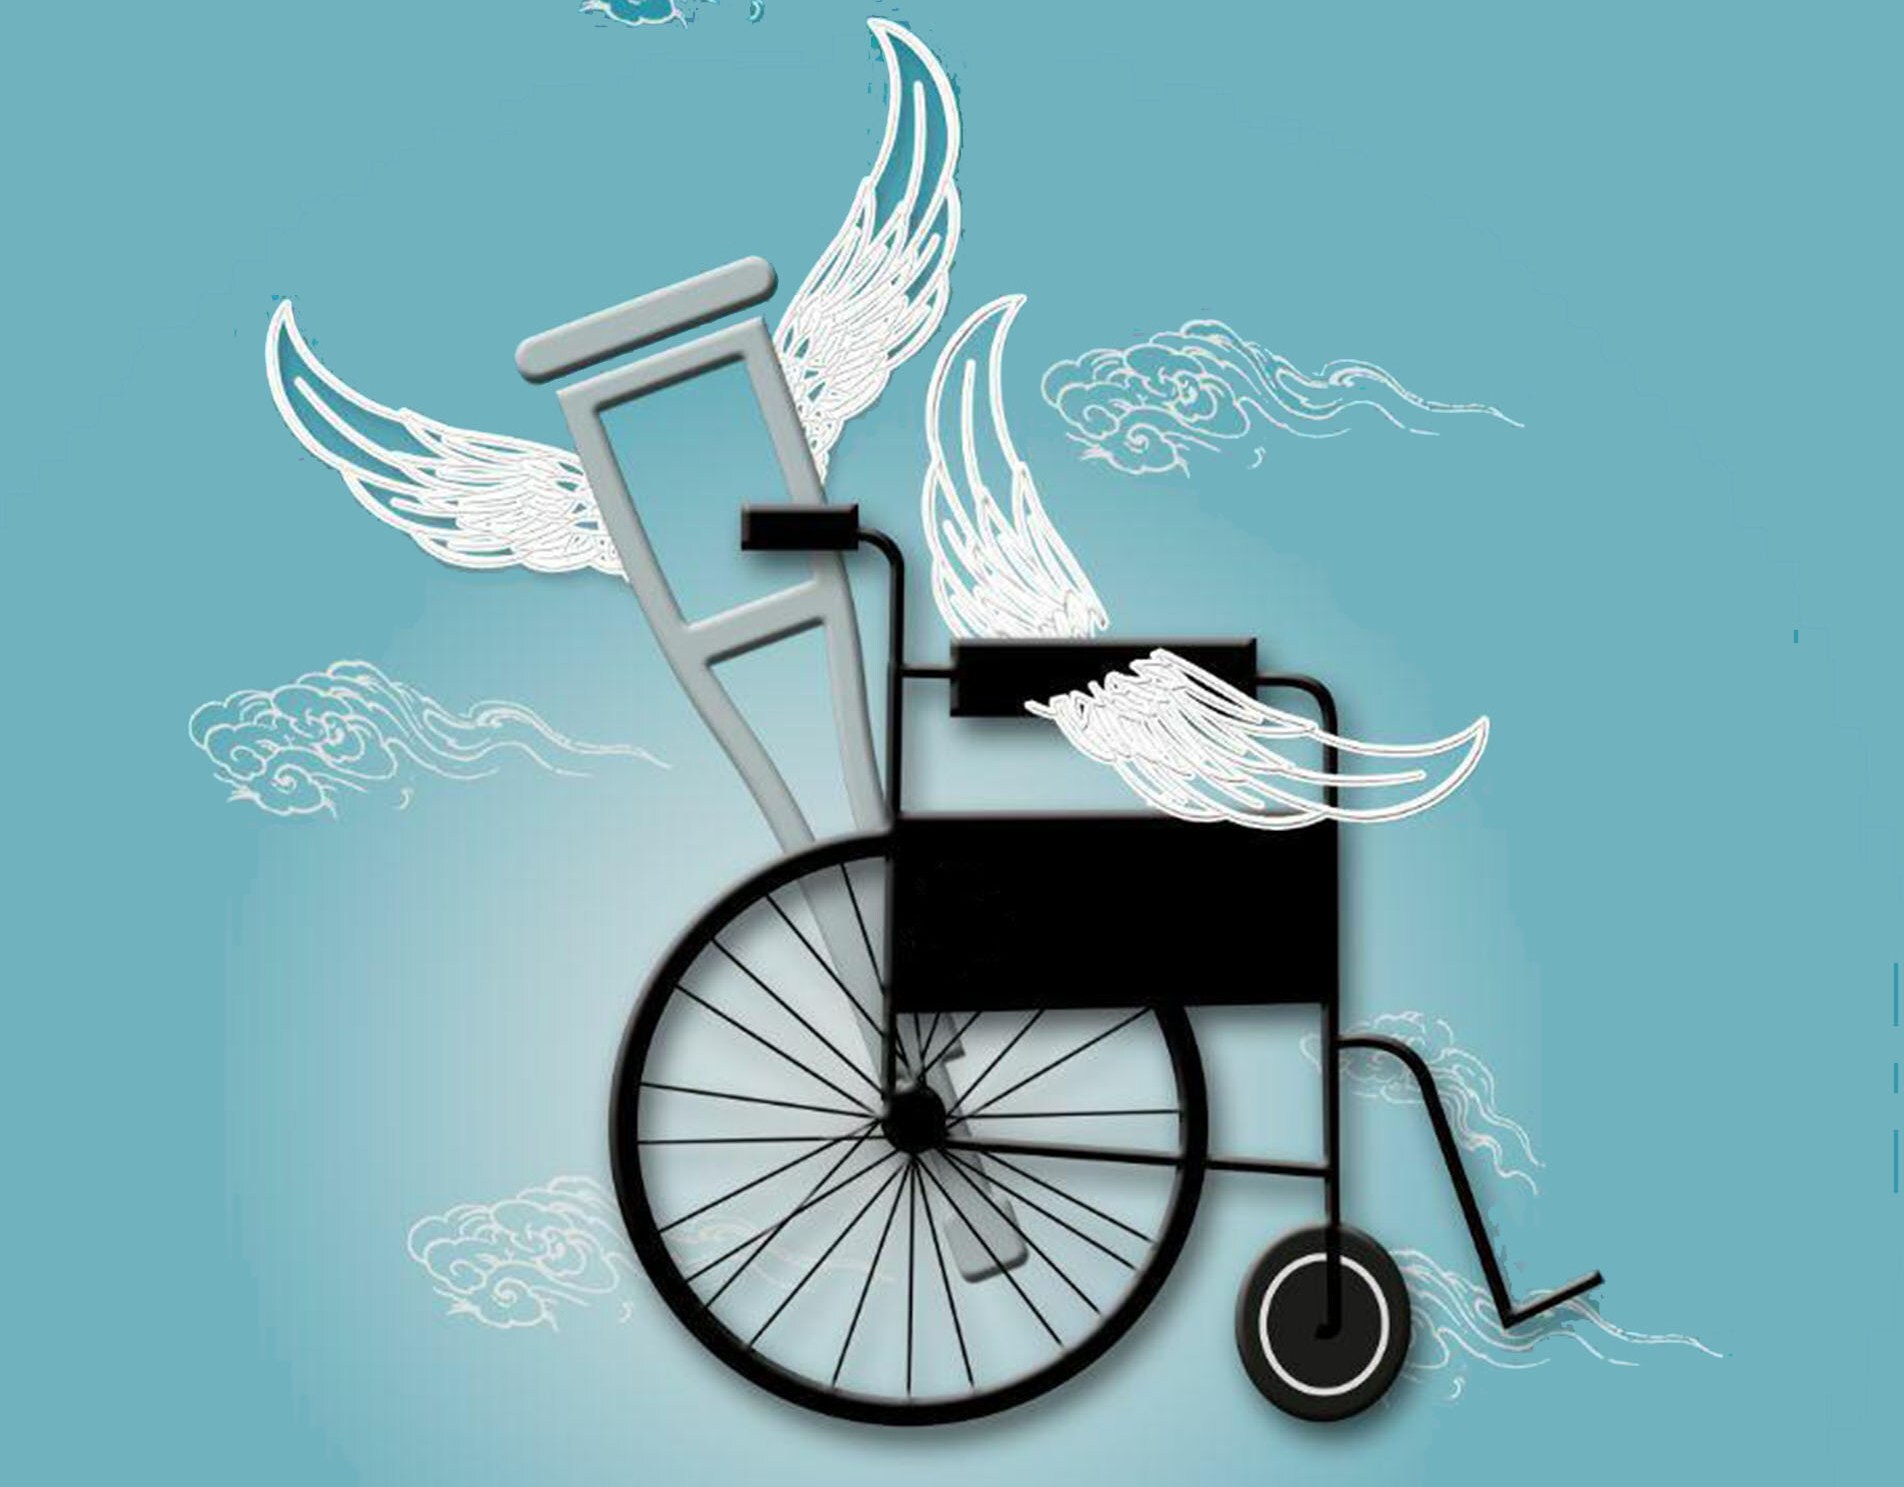 بیمه سلامت کهگیلویه و بویراحمد حامی معلولان است